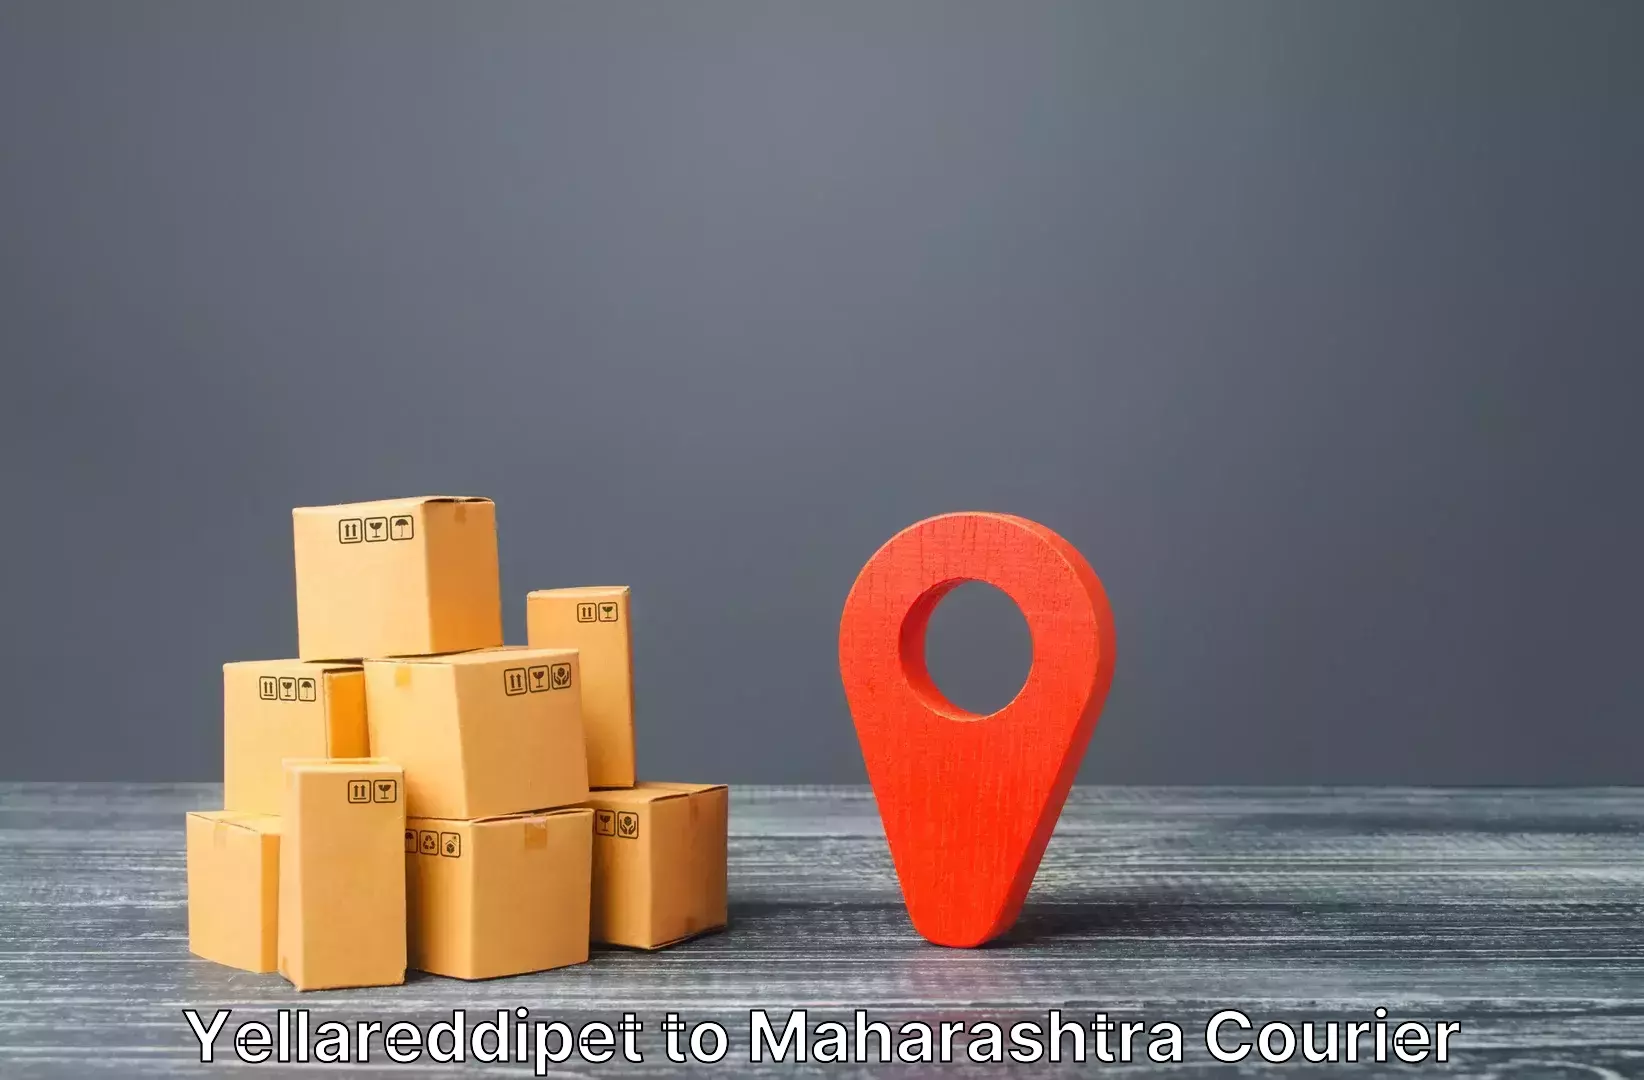 Luggage shipping estimate Yellareddipet to IIIT Pune